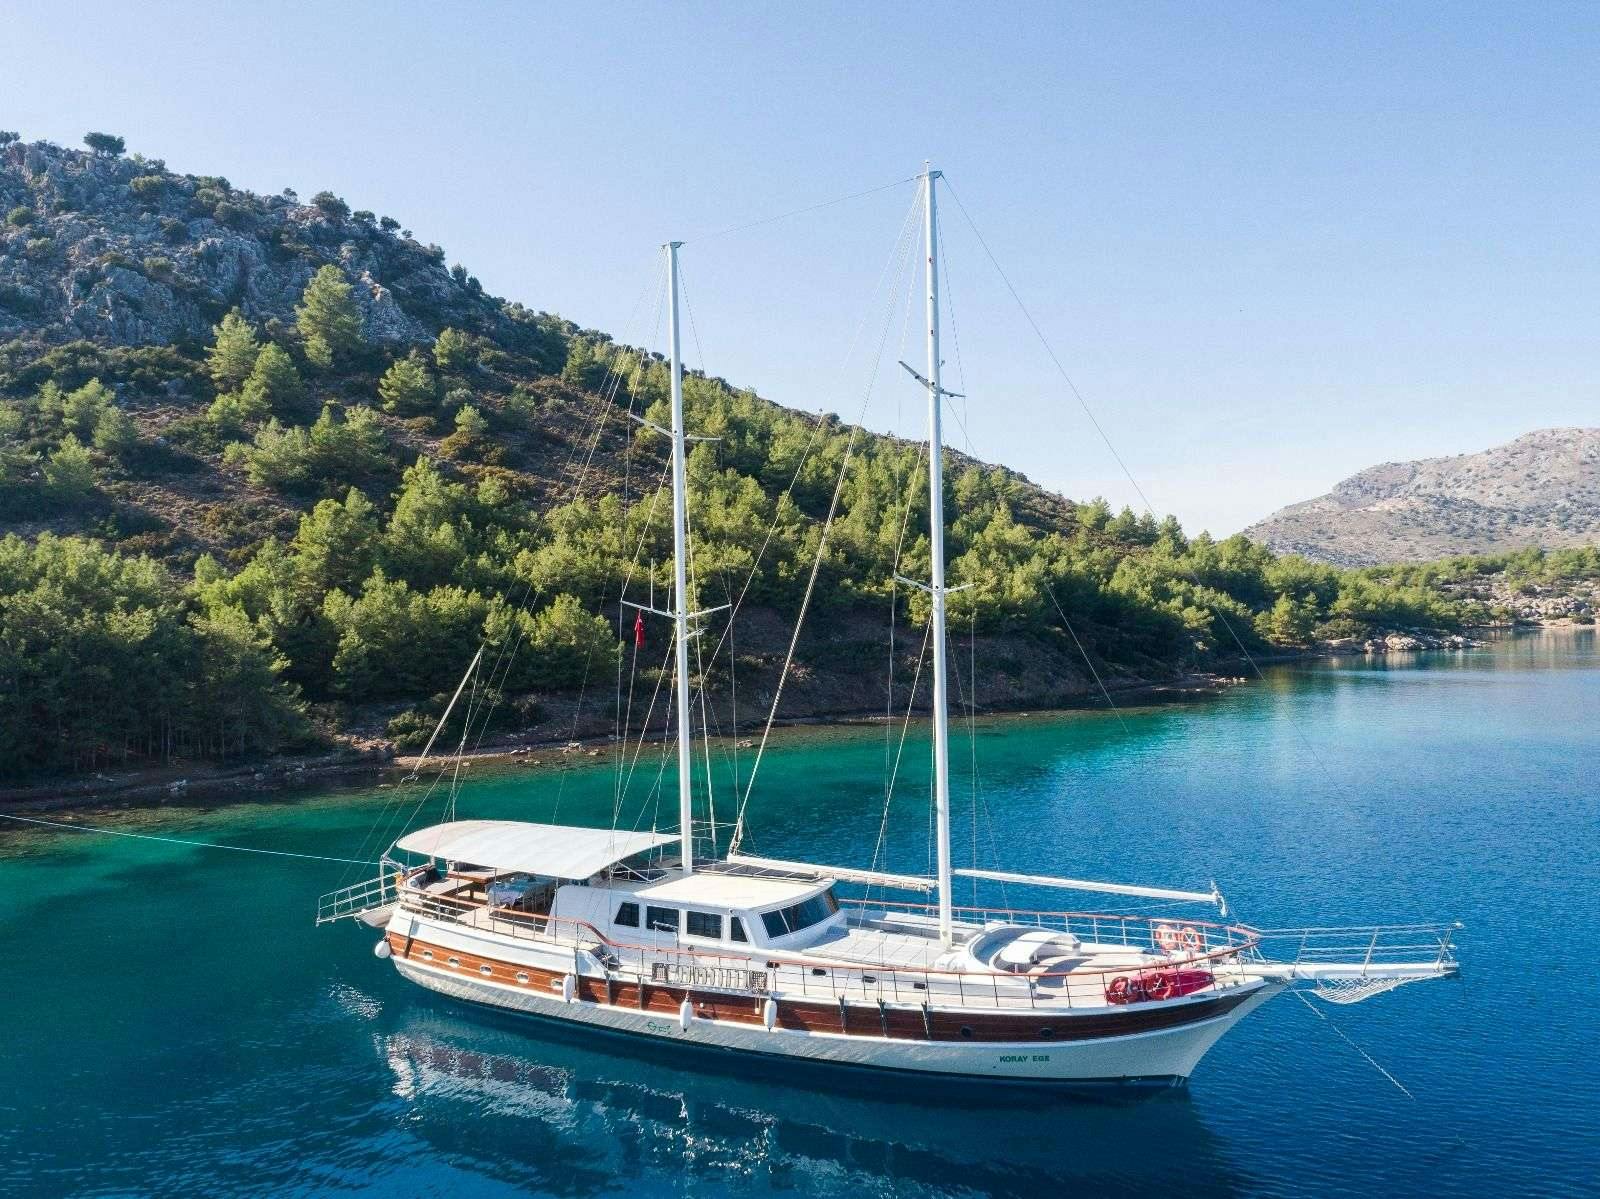 koray ege - Luxury yacht charter Turkey & Boat hire in Greece & Turkey 1